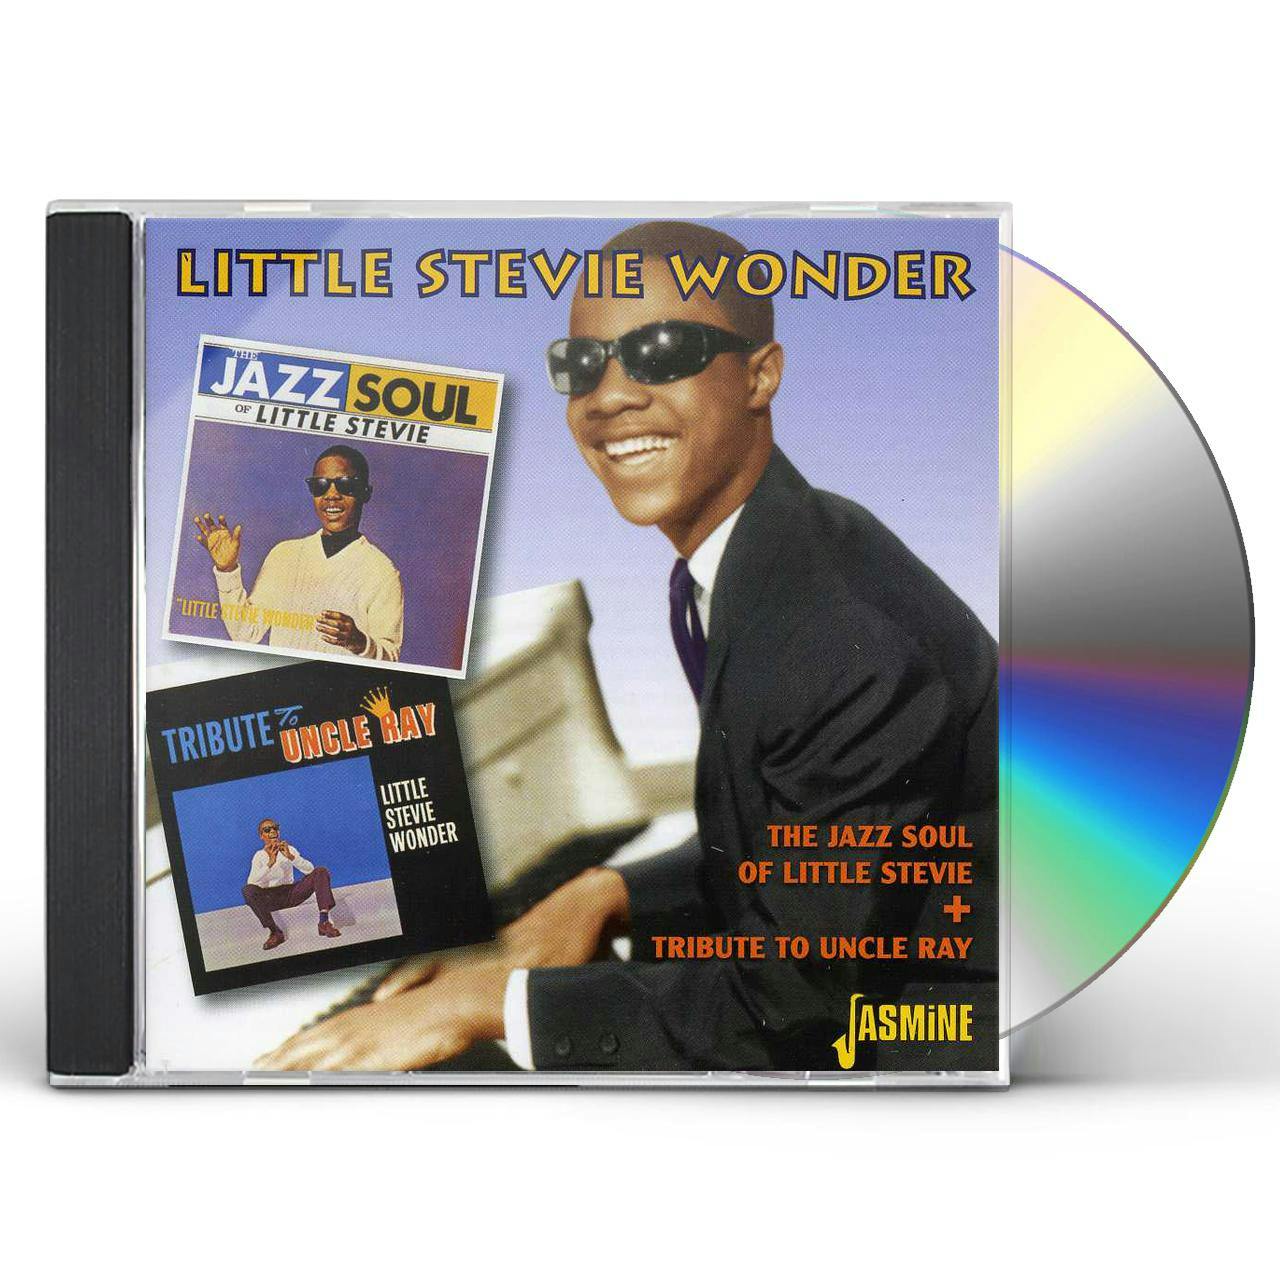 Stevie　CD　LITTLE　SOUL　Wonder　OF　JAZZ　STEVIE